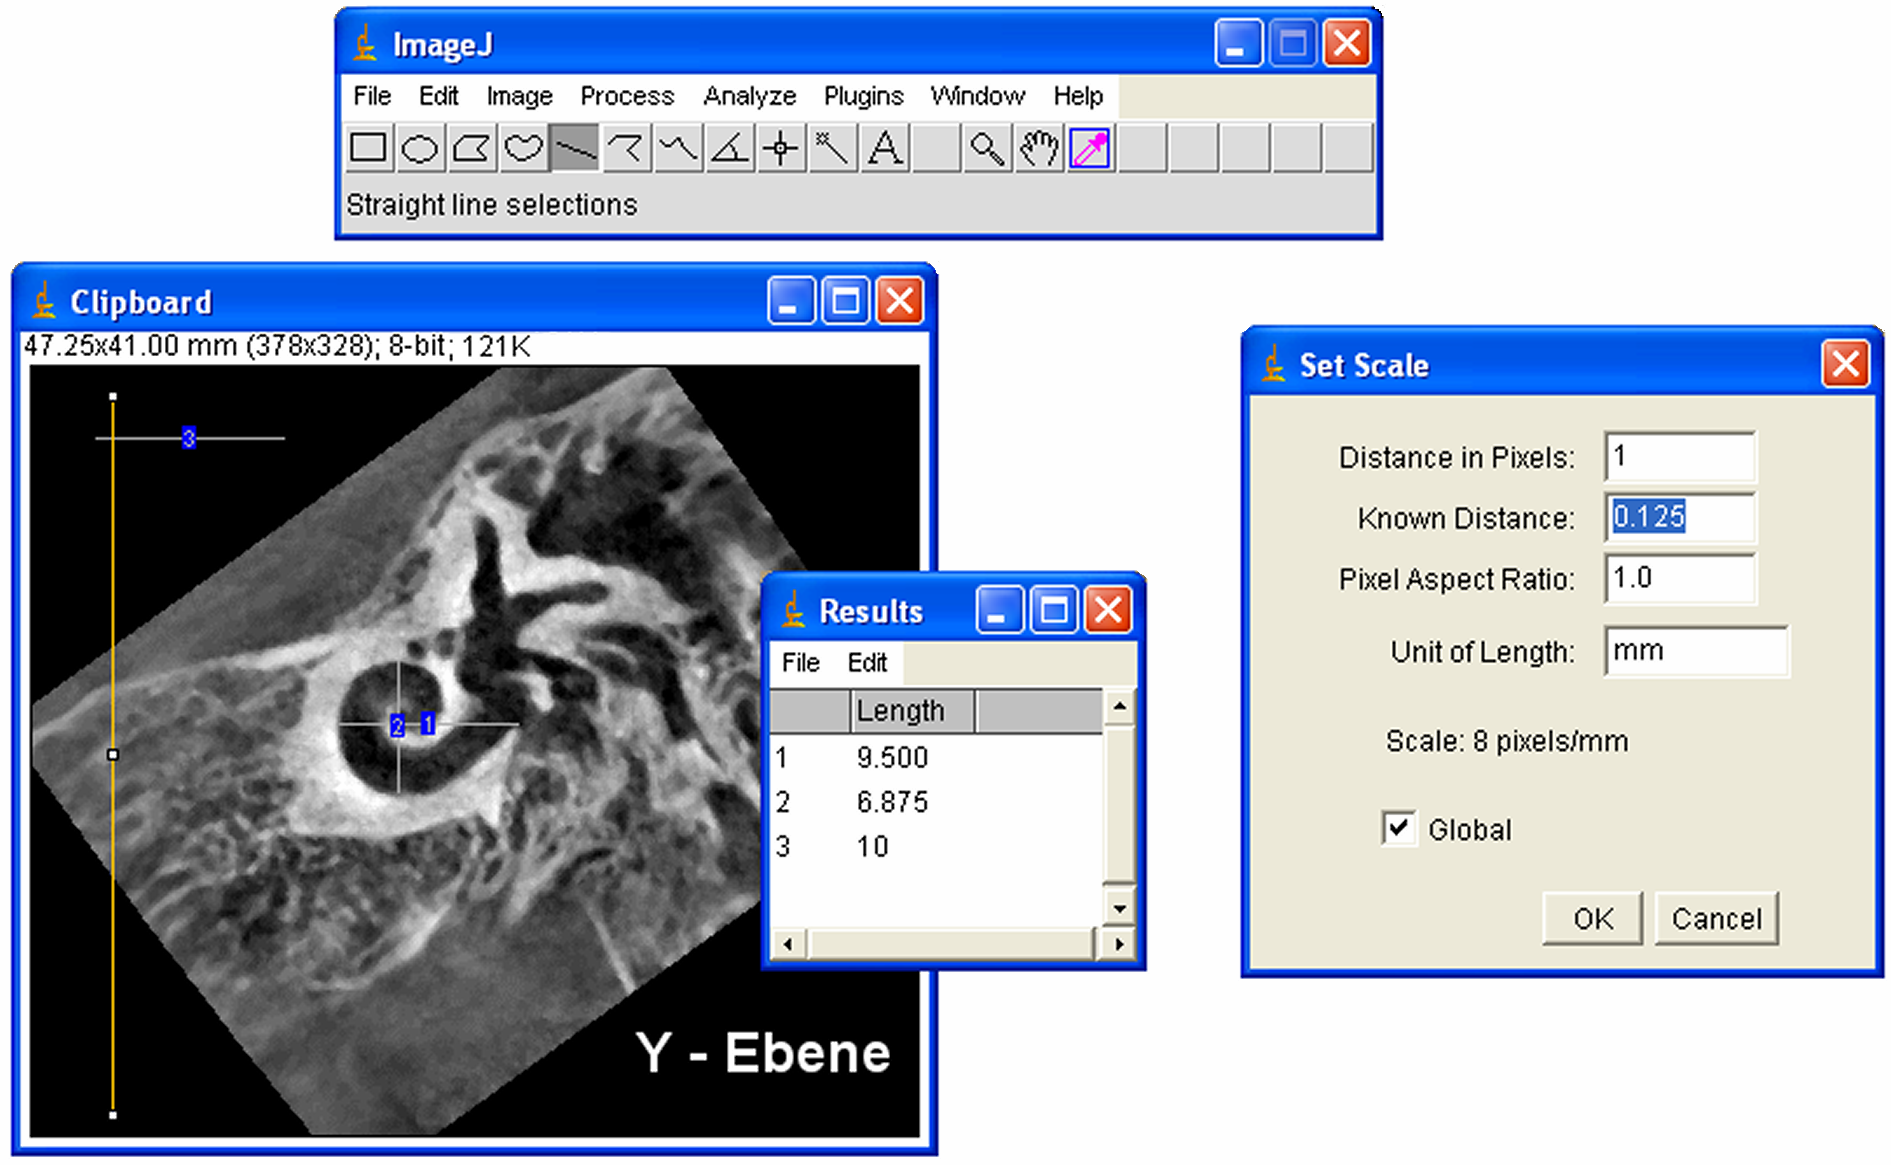 Bildanalysesoftware ImageJ Version 1.32j (National Insitute of Health, USA) durchgeführt. Die Messskalierung betrug 0.125 mm pro Pixel.